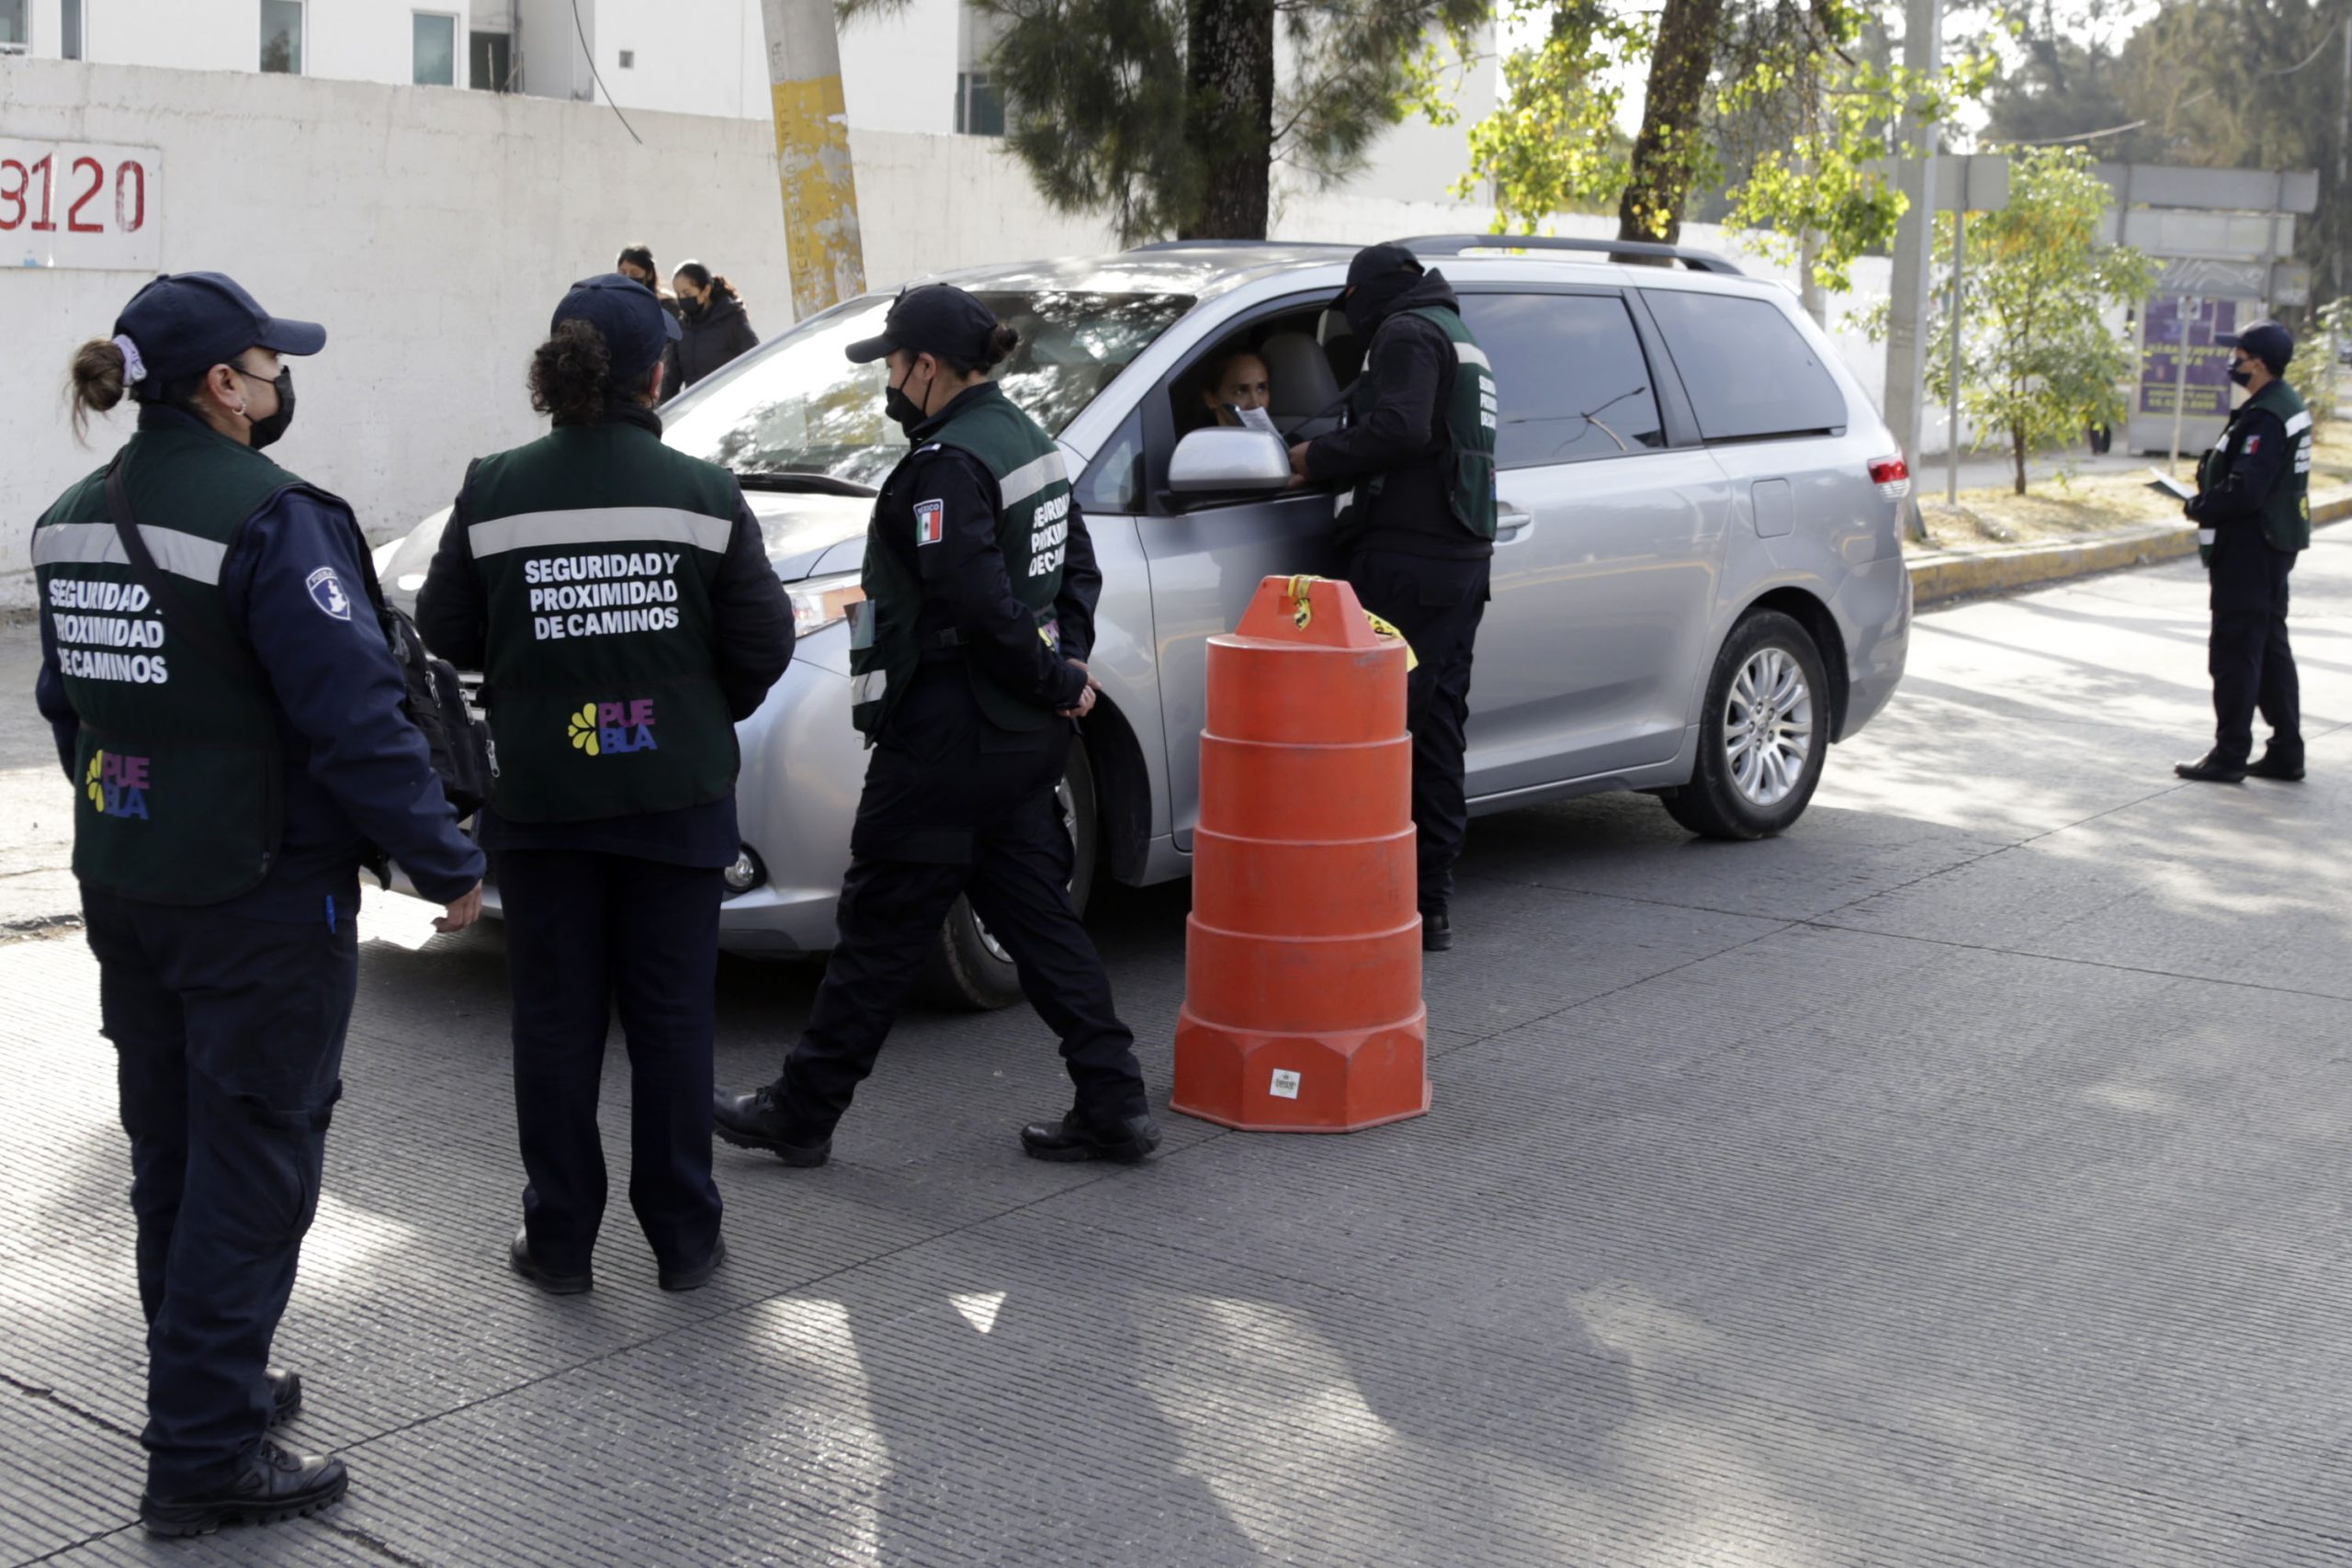 Comienza «operativo de cortesía» de verificación vehicular en Puebla: SSP